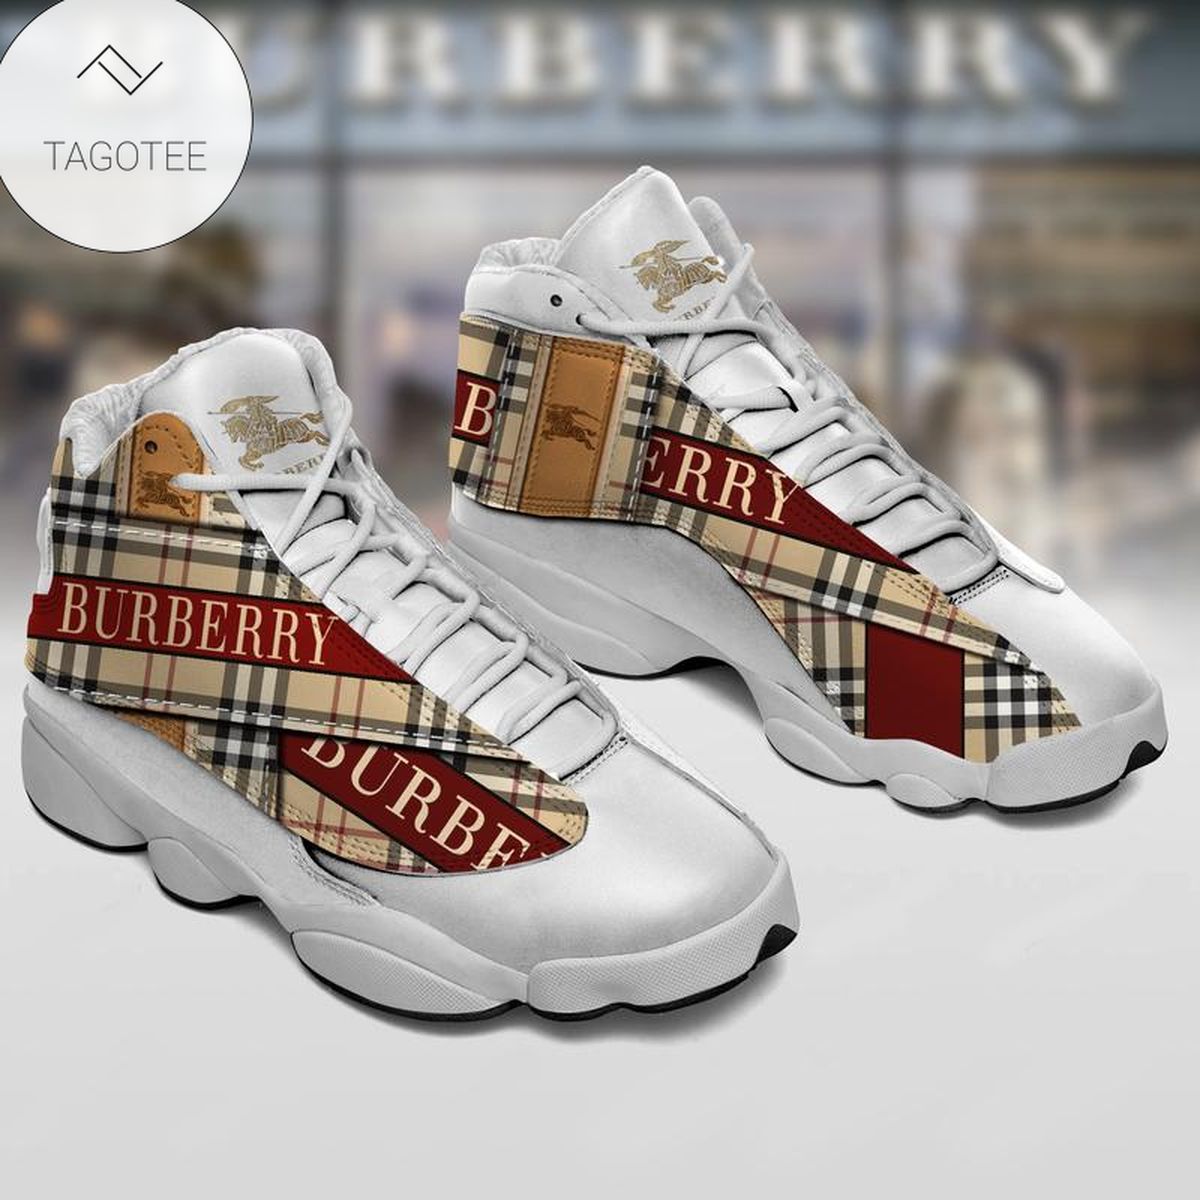 Burberry Sneakers Air Jordan 13 Shoes